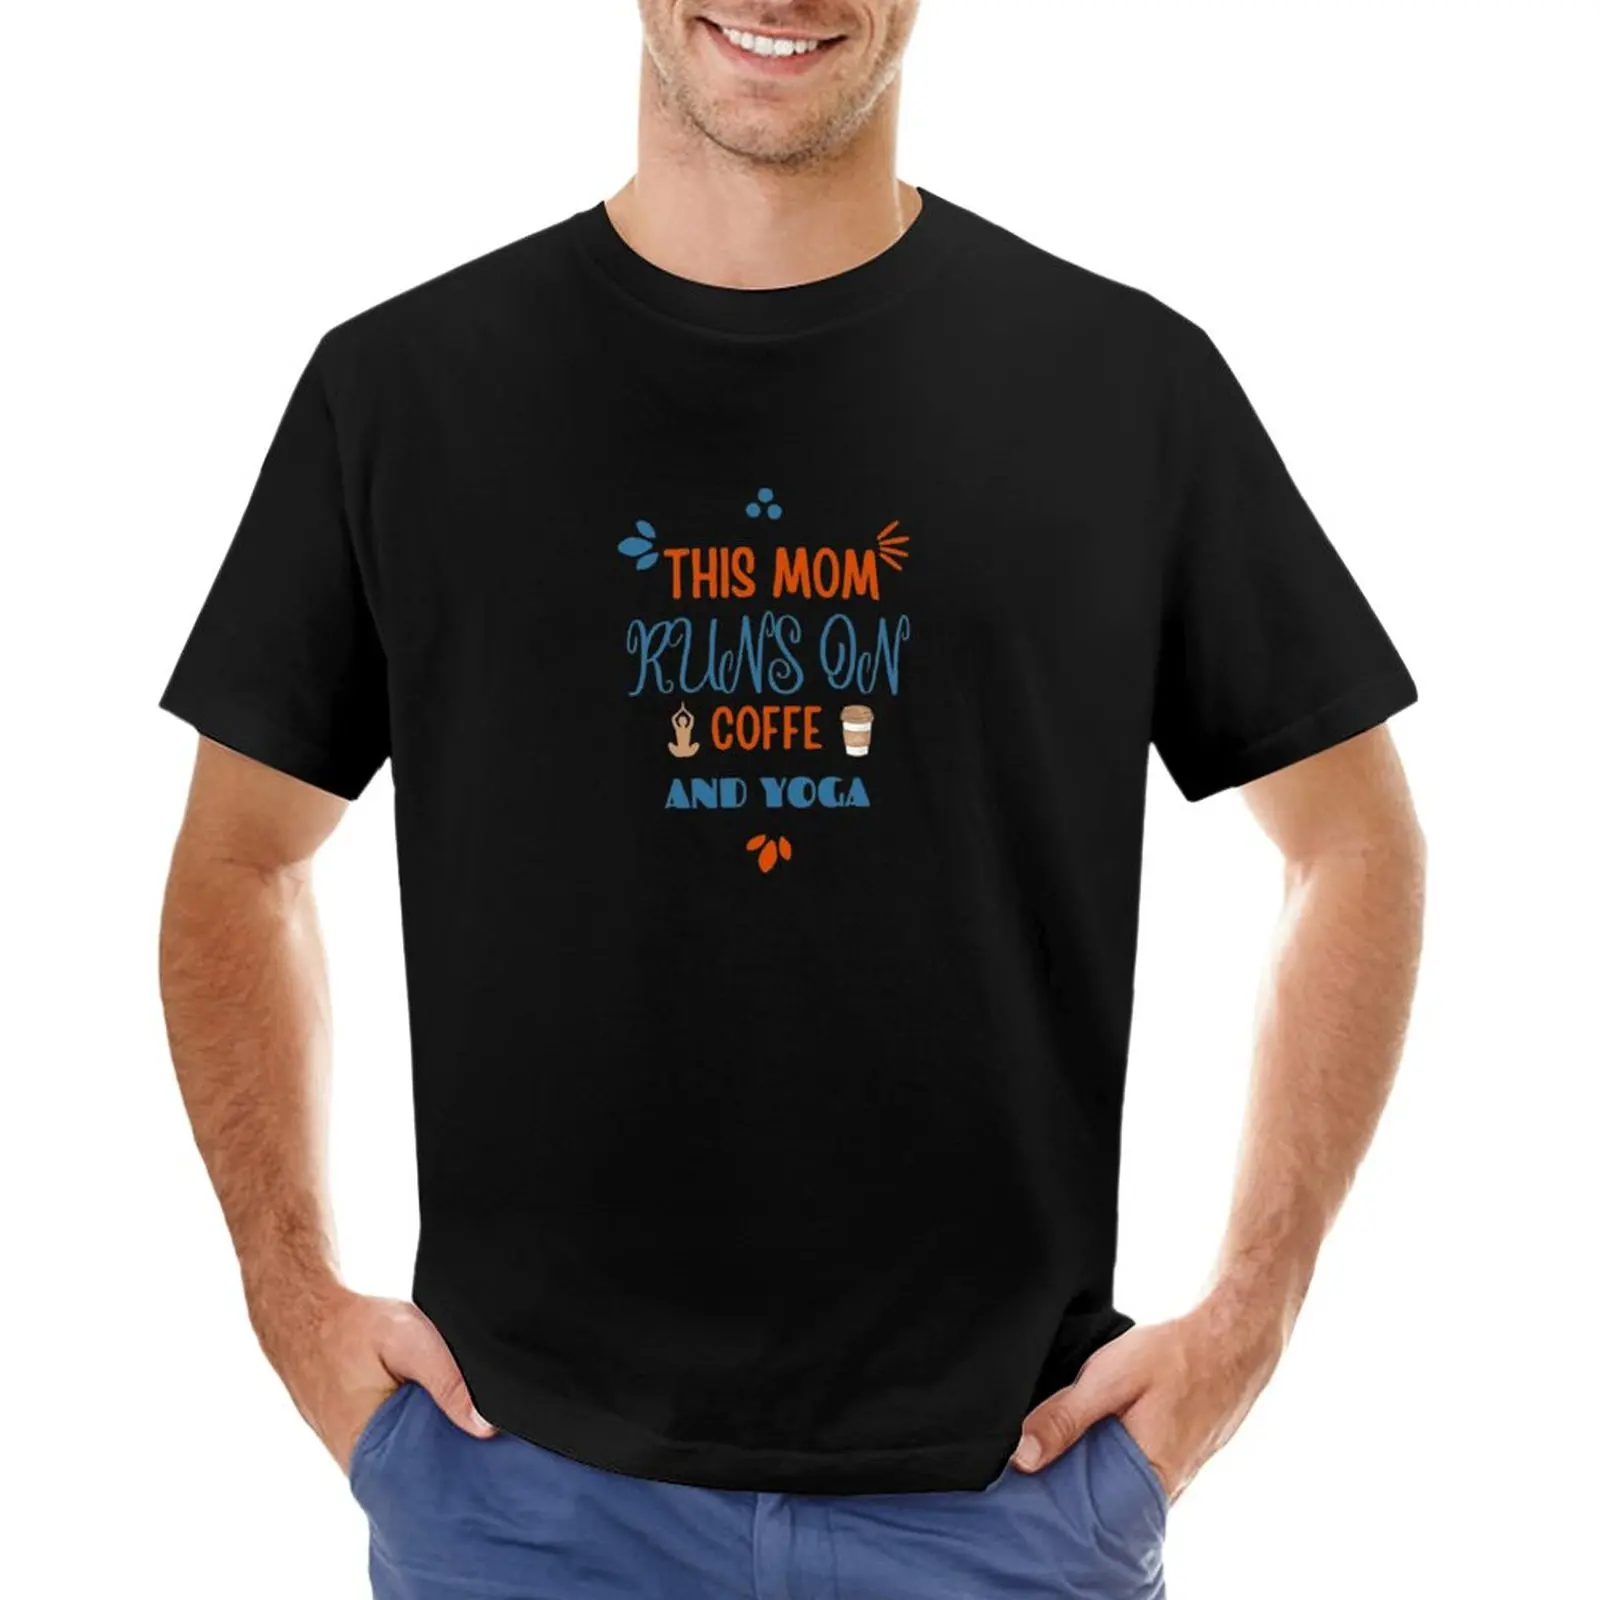 Эта мама питается кофе и йогой, футболка с графическим рисунком, футболки для мальчиков, футболки с животным принтом, футболки для мужчин с графическим рисунком